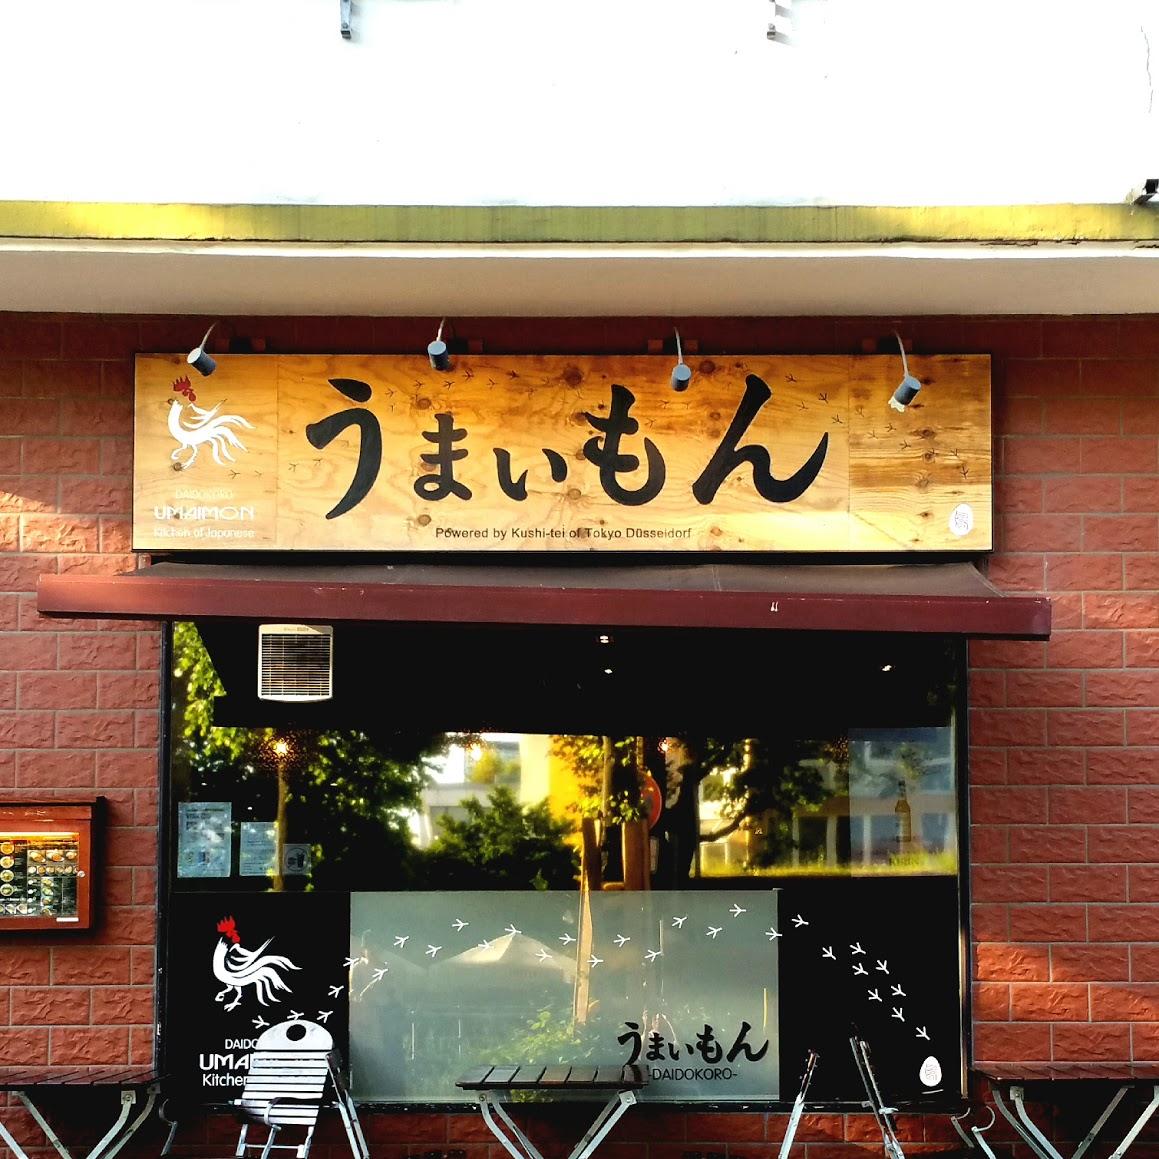 Restaurant "Daidokoro Umaimon" in Düsseldorf